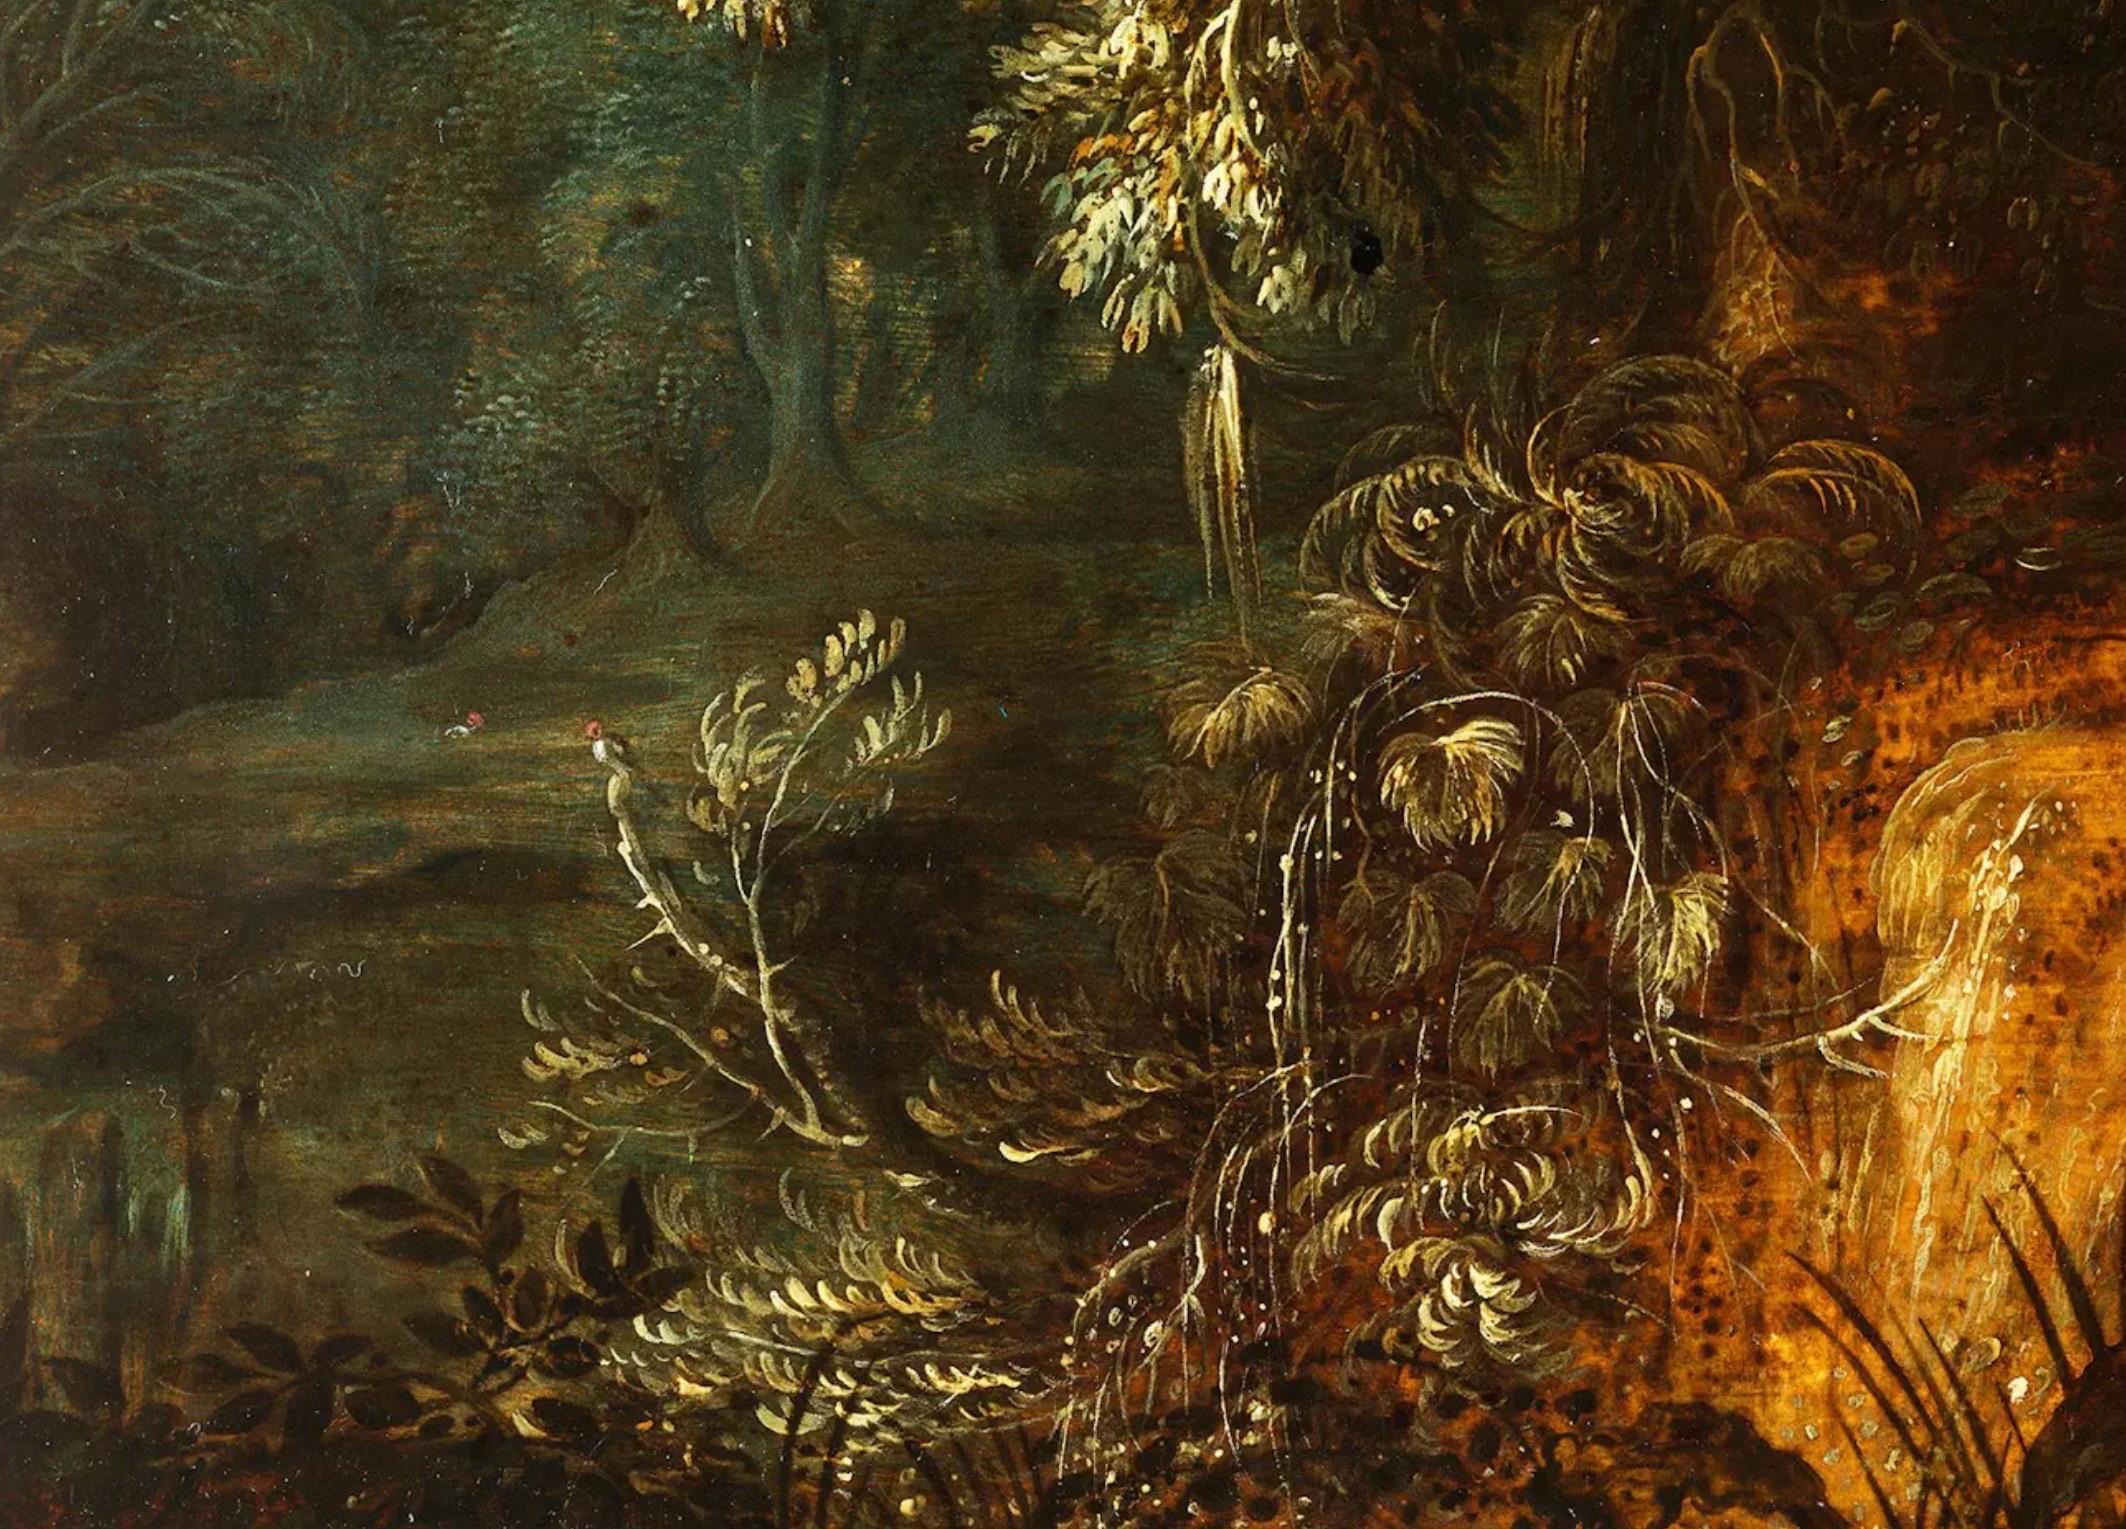 Flämisches Altmeistergemälde aus dem 17. Jahrhundert, das eine Waldlandschaft mit einer majestätischen Eiche darstellt

Alexander Keirincx, geboren um 1600 in Antwerpen, Belgien, war ein bedeutender flämischer Landschaftsmaler des Goldenen